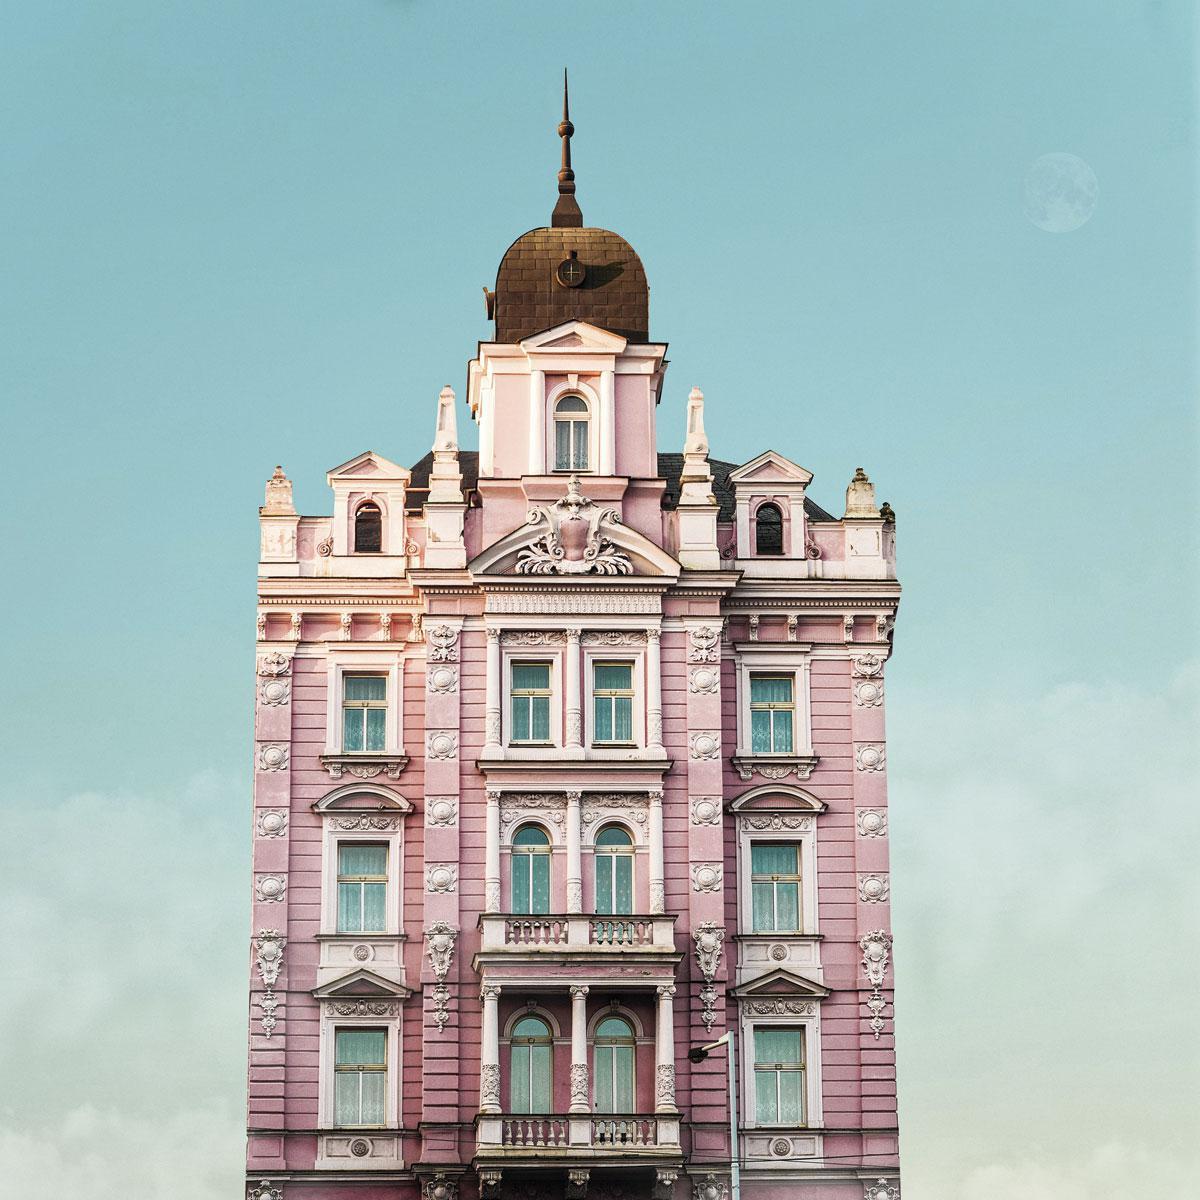 Hotel Opera in Praag, een van de vele locaties in het boek.